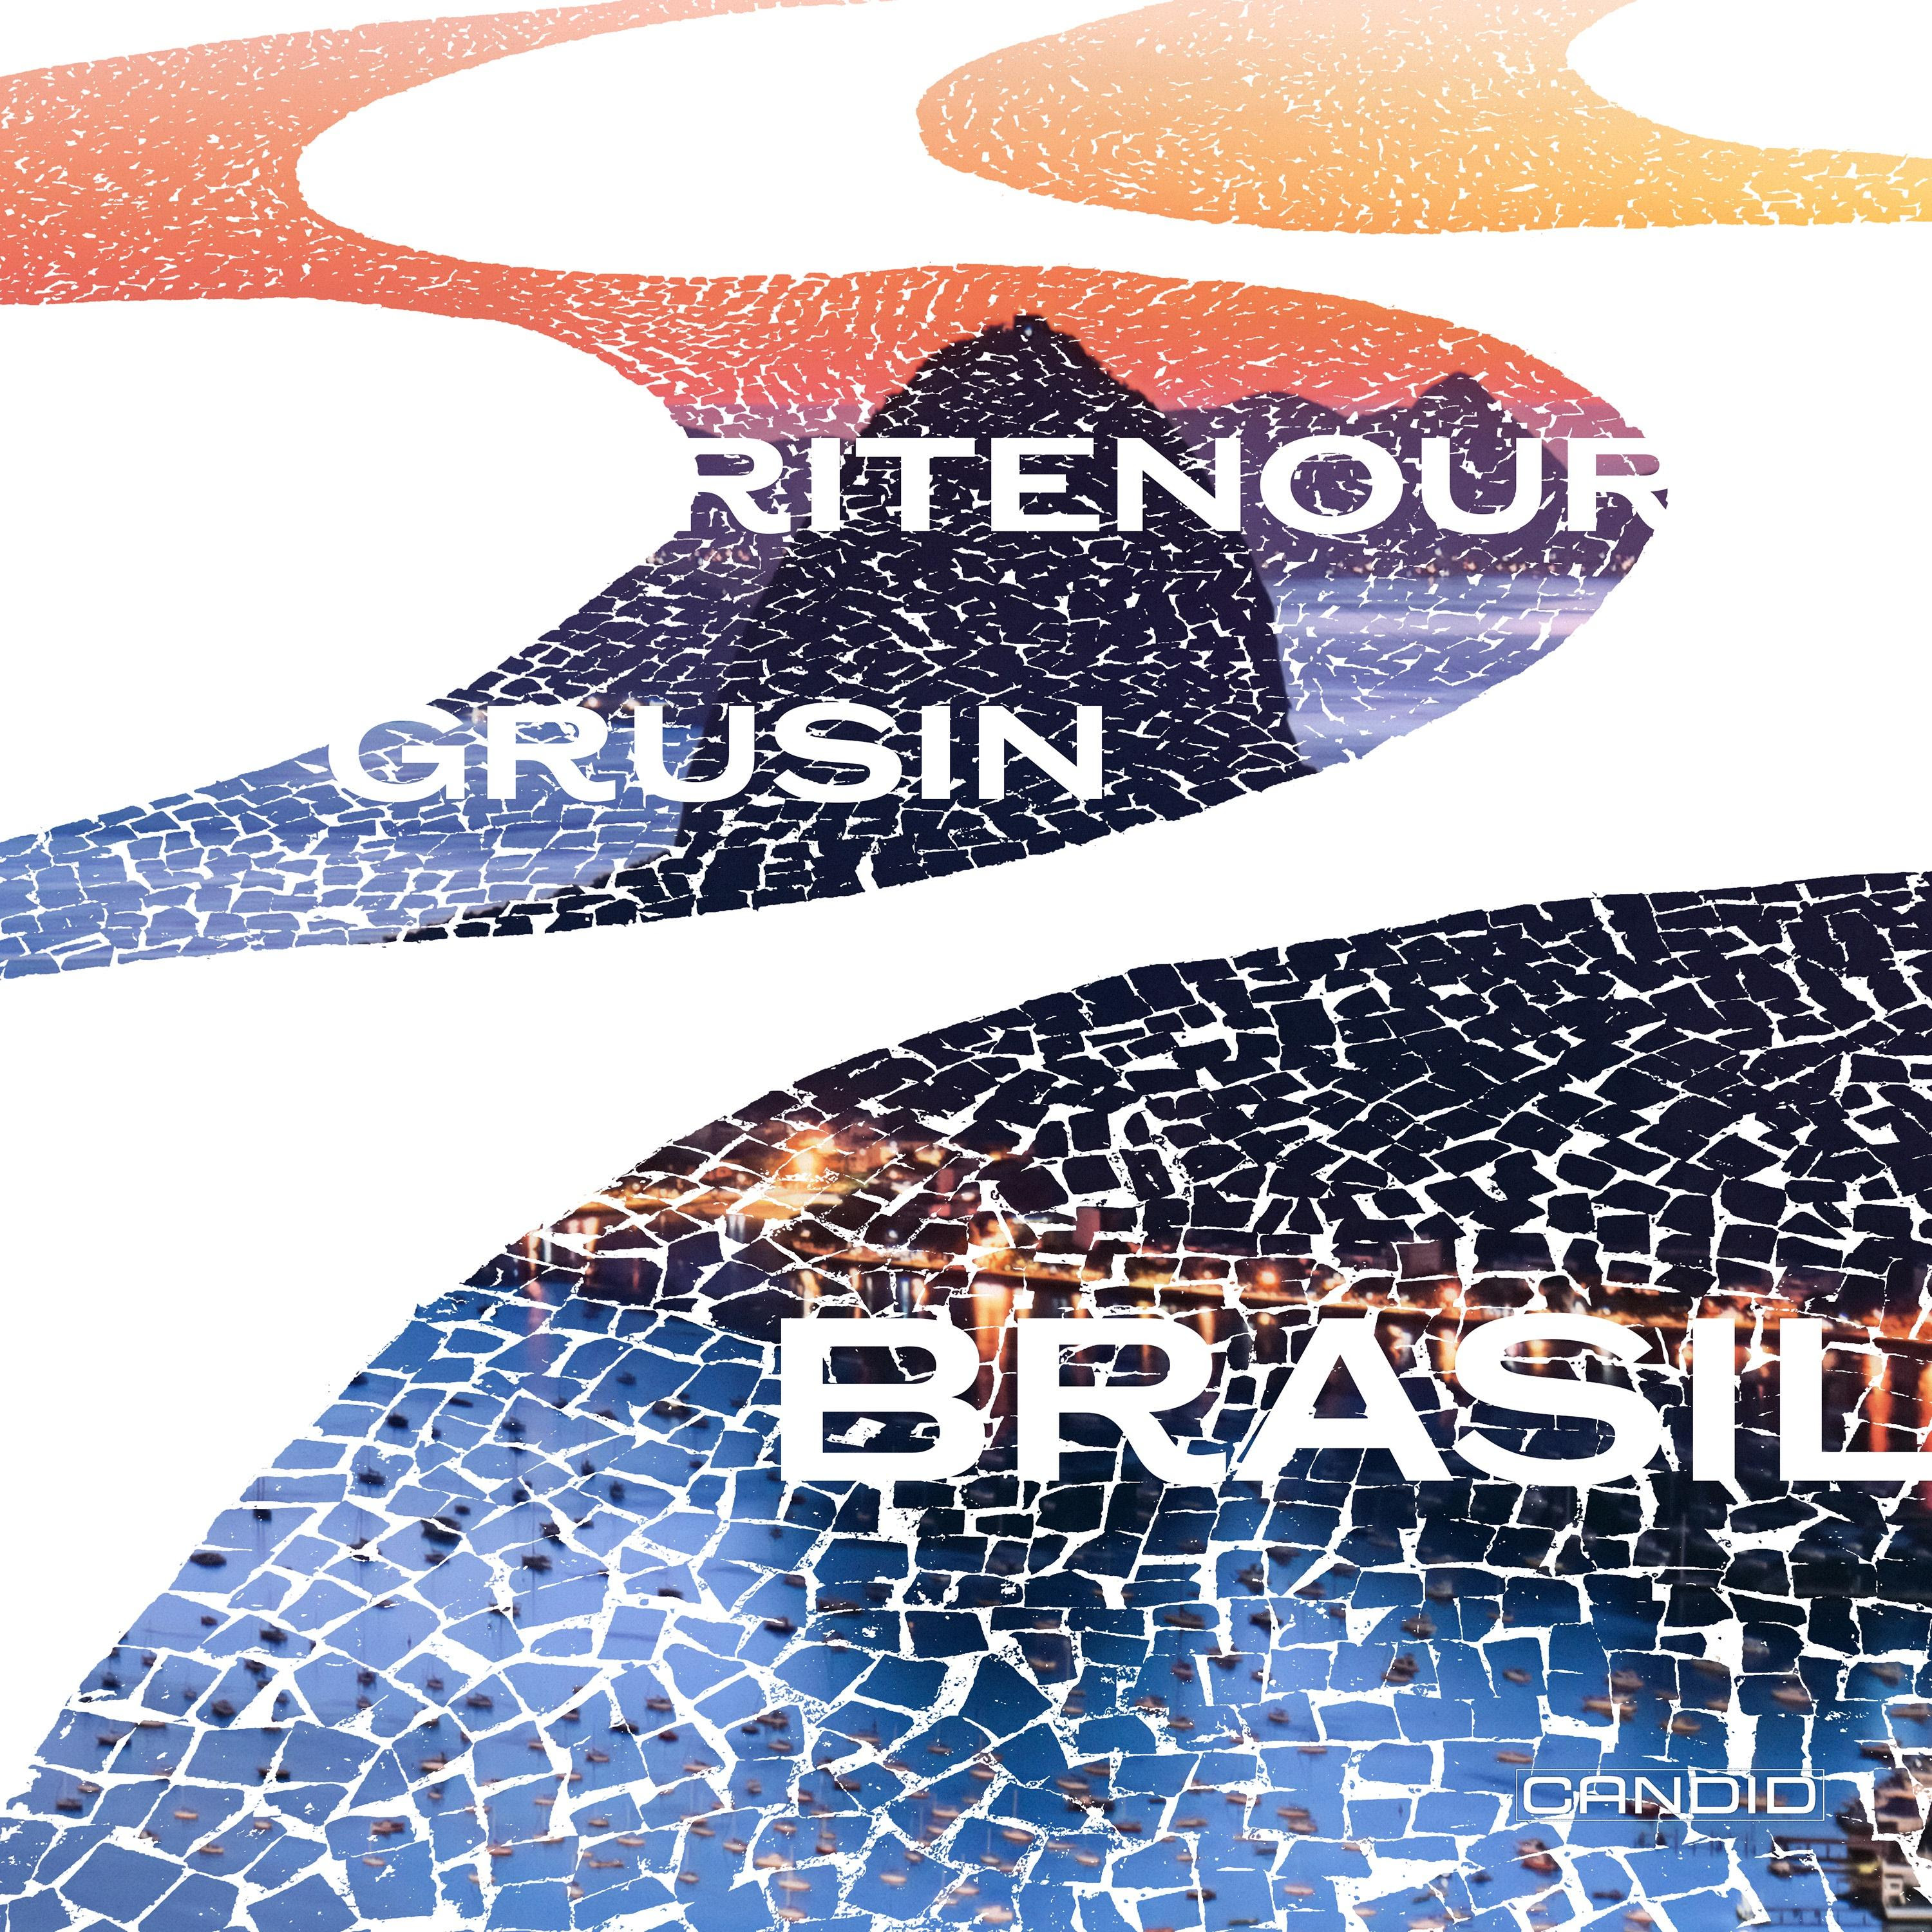 Lee Ritenour & Dave Grusin: Brasil